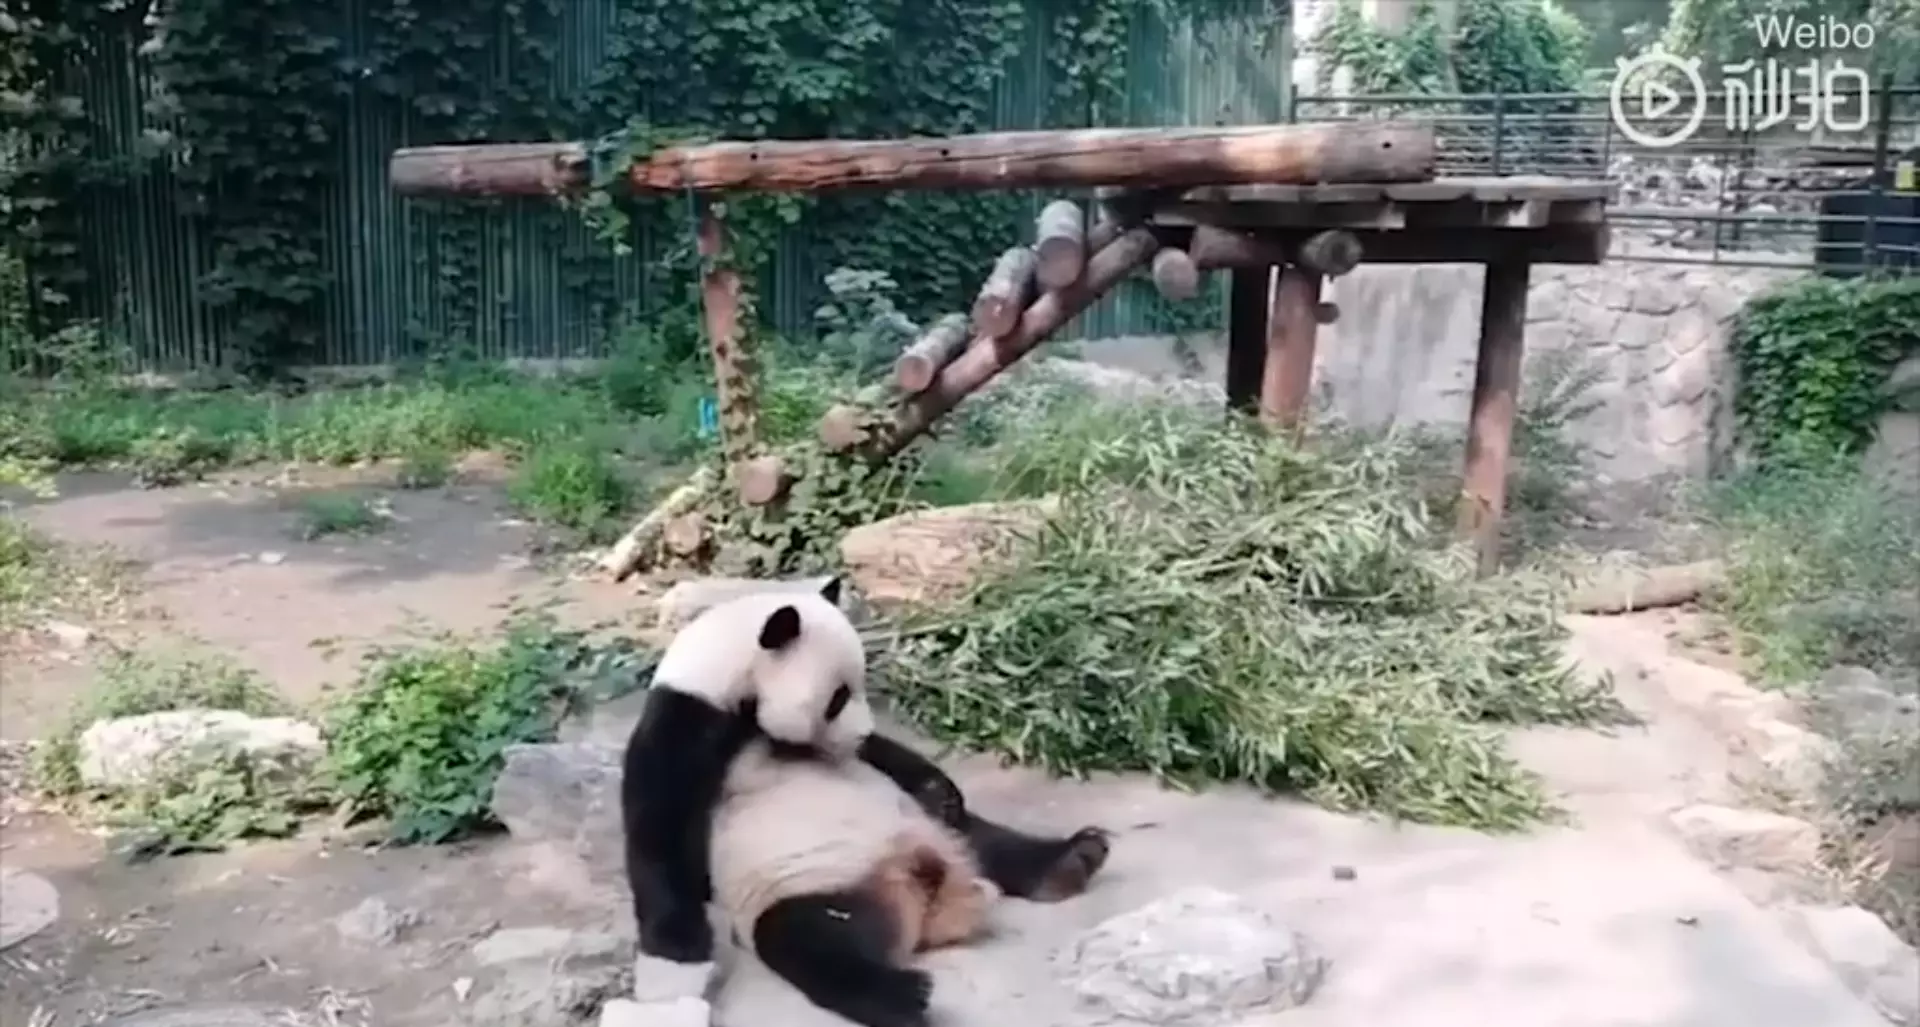 Seriously, who would throw rocks at a panda?